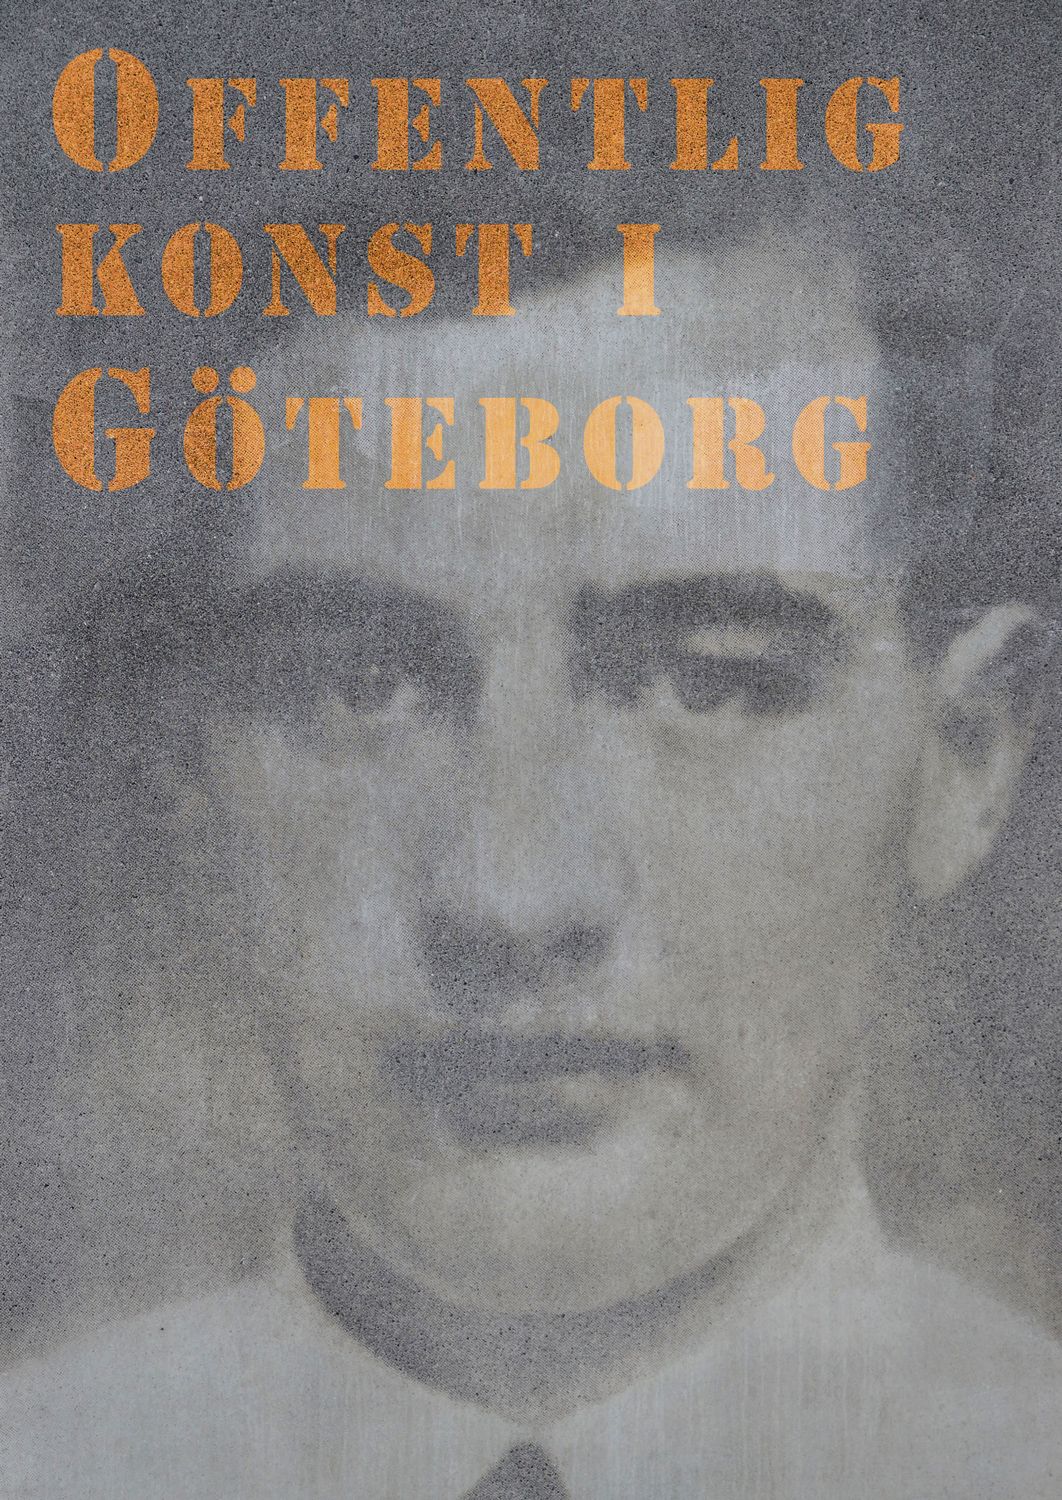 Offentlig konst i Göteborg, e-bog af Mikael Mosesson